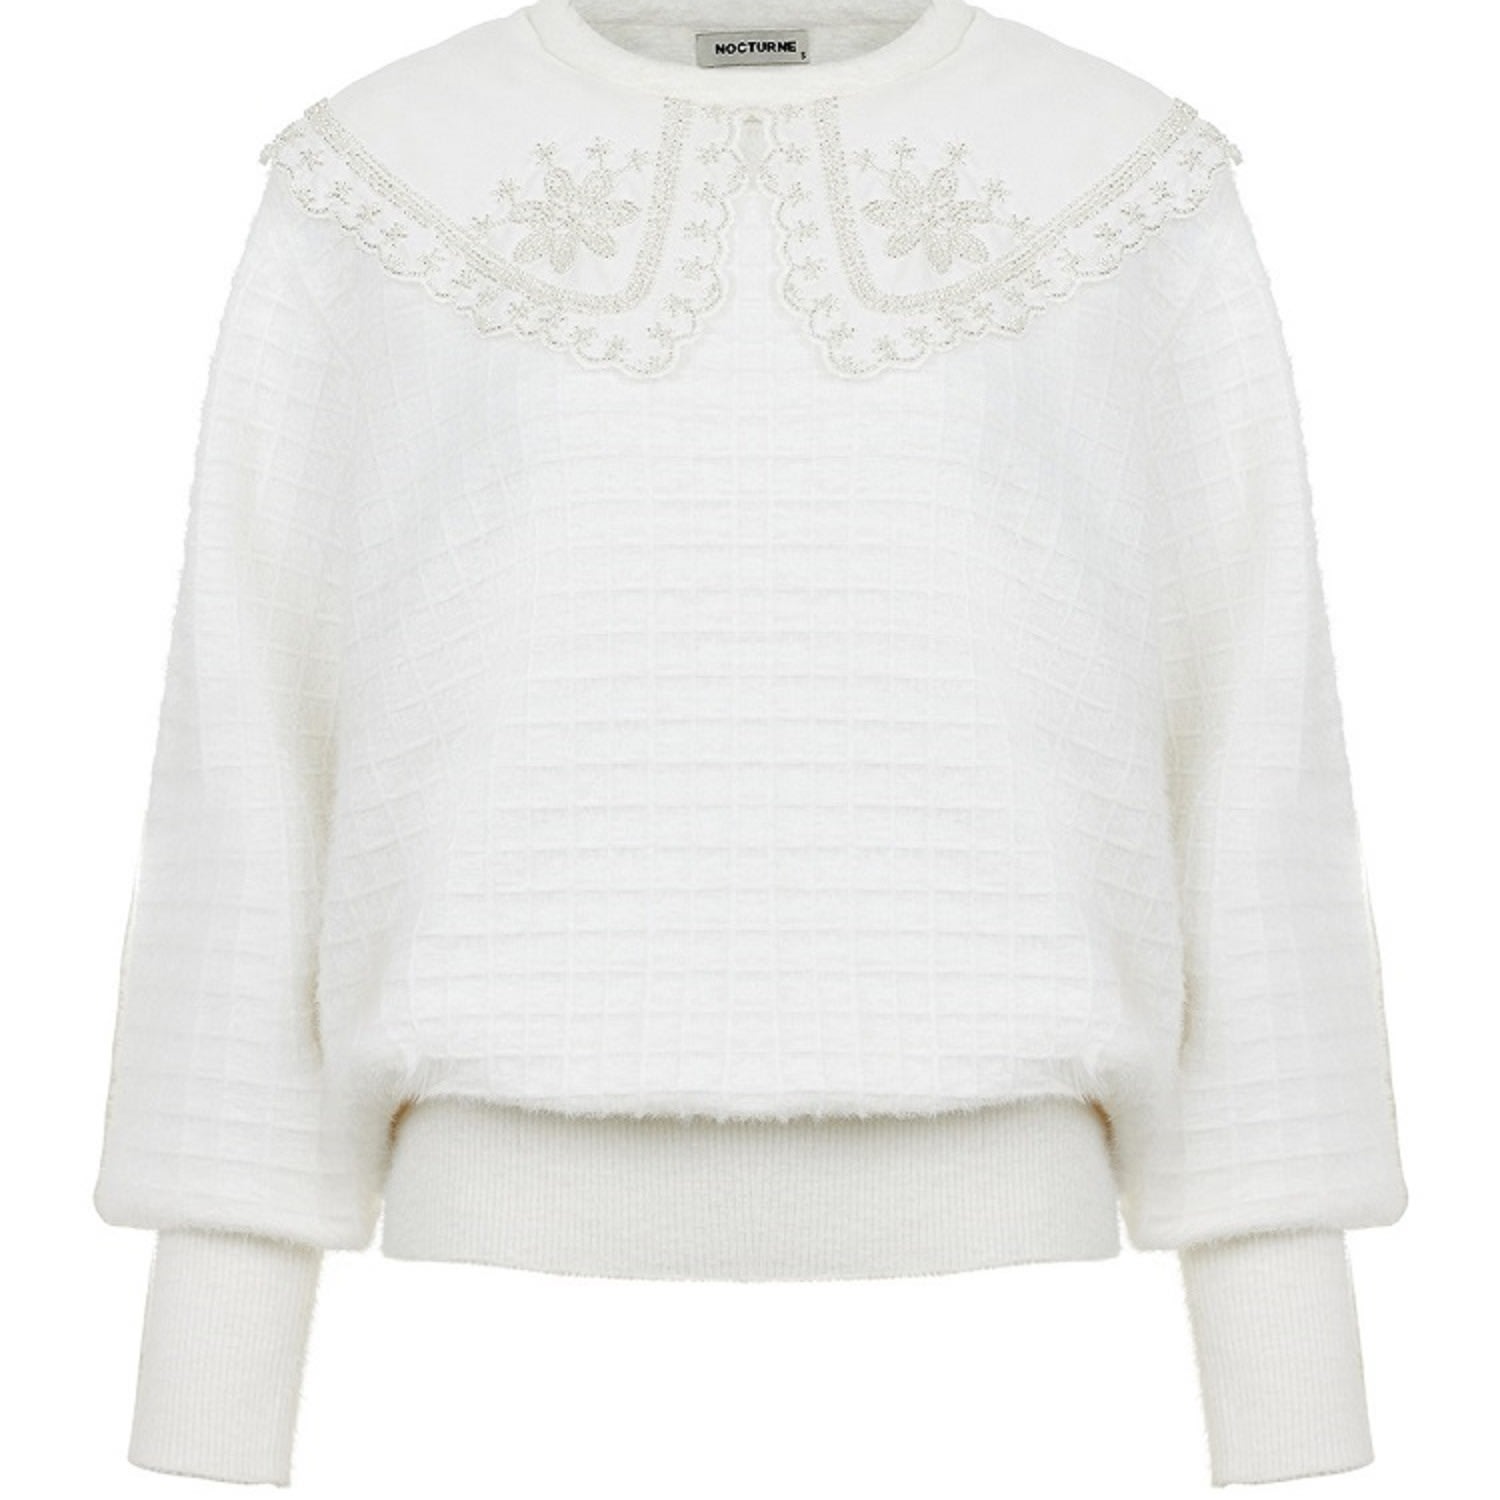 Nocturne Women's White Embroidered Sweater Ecru